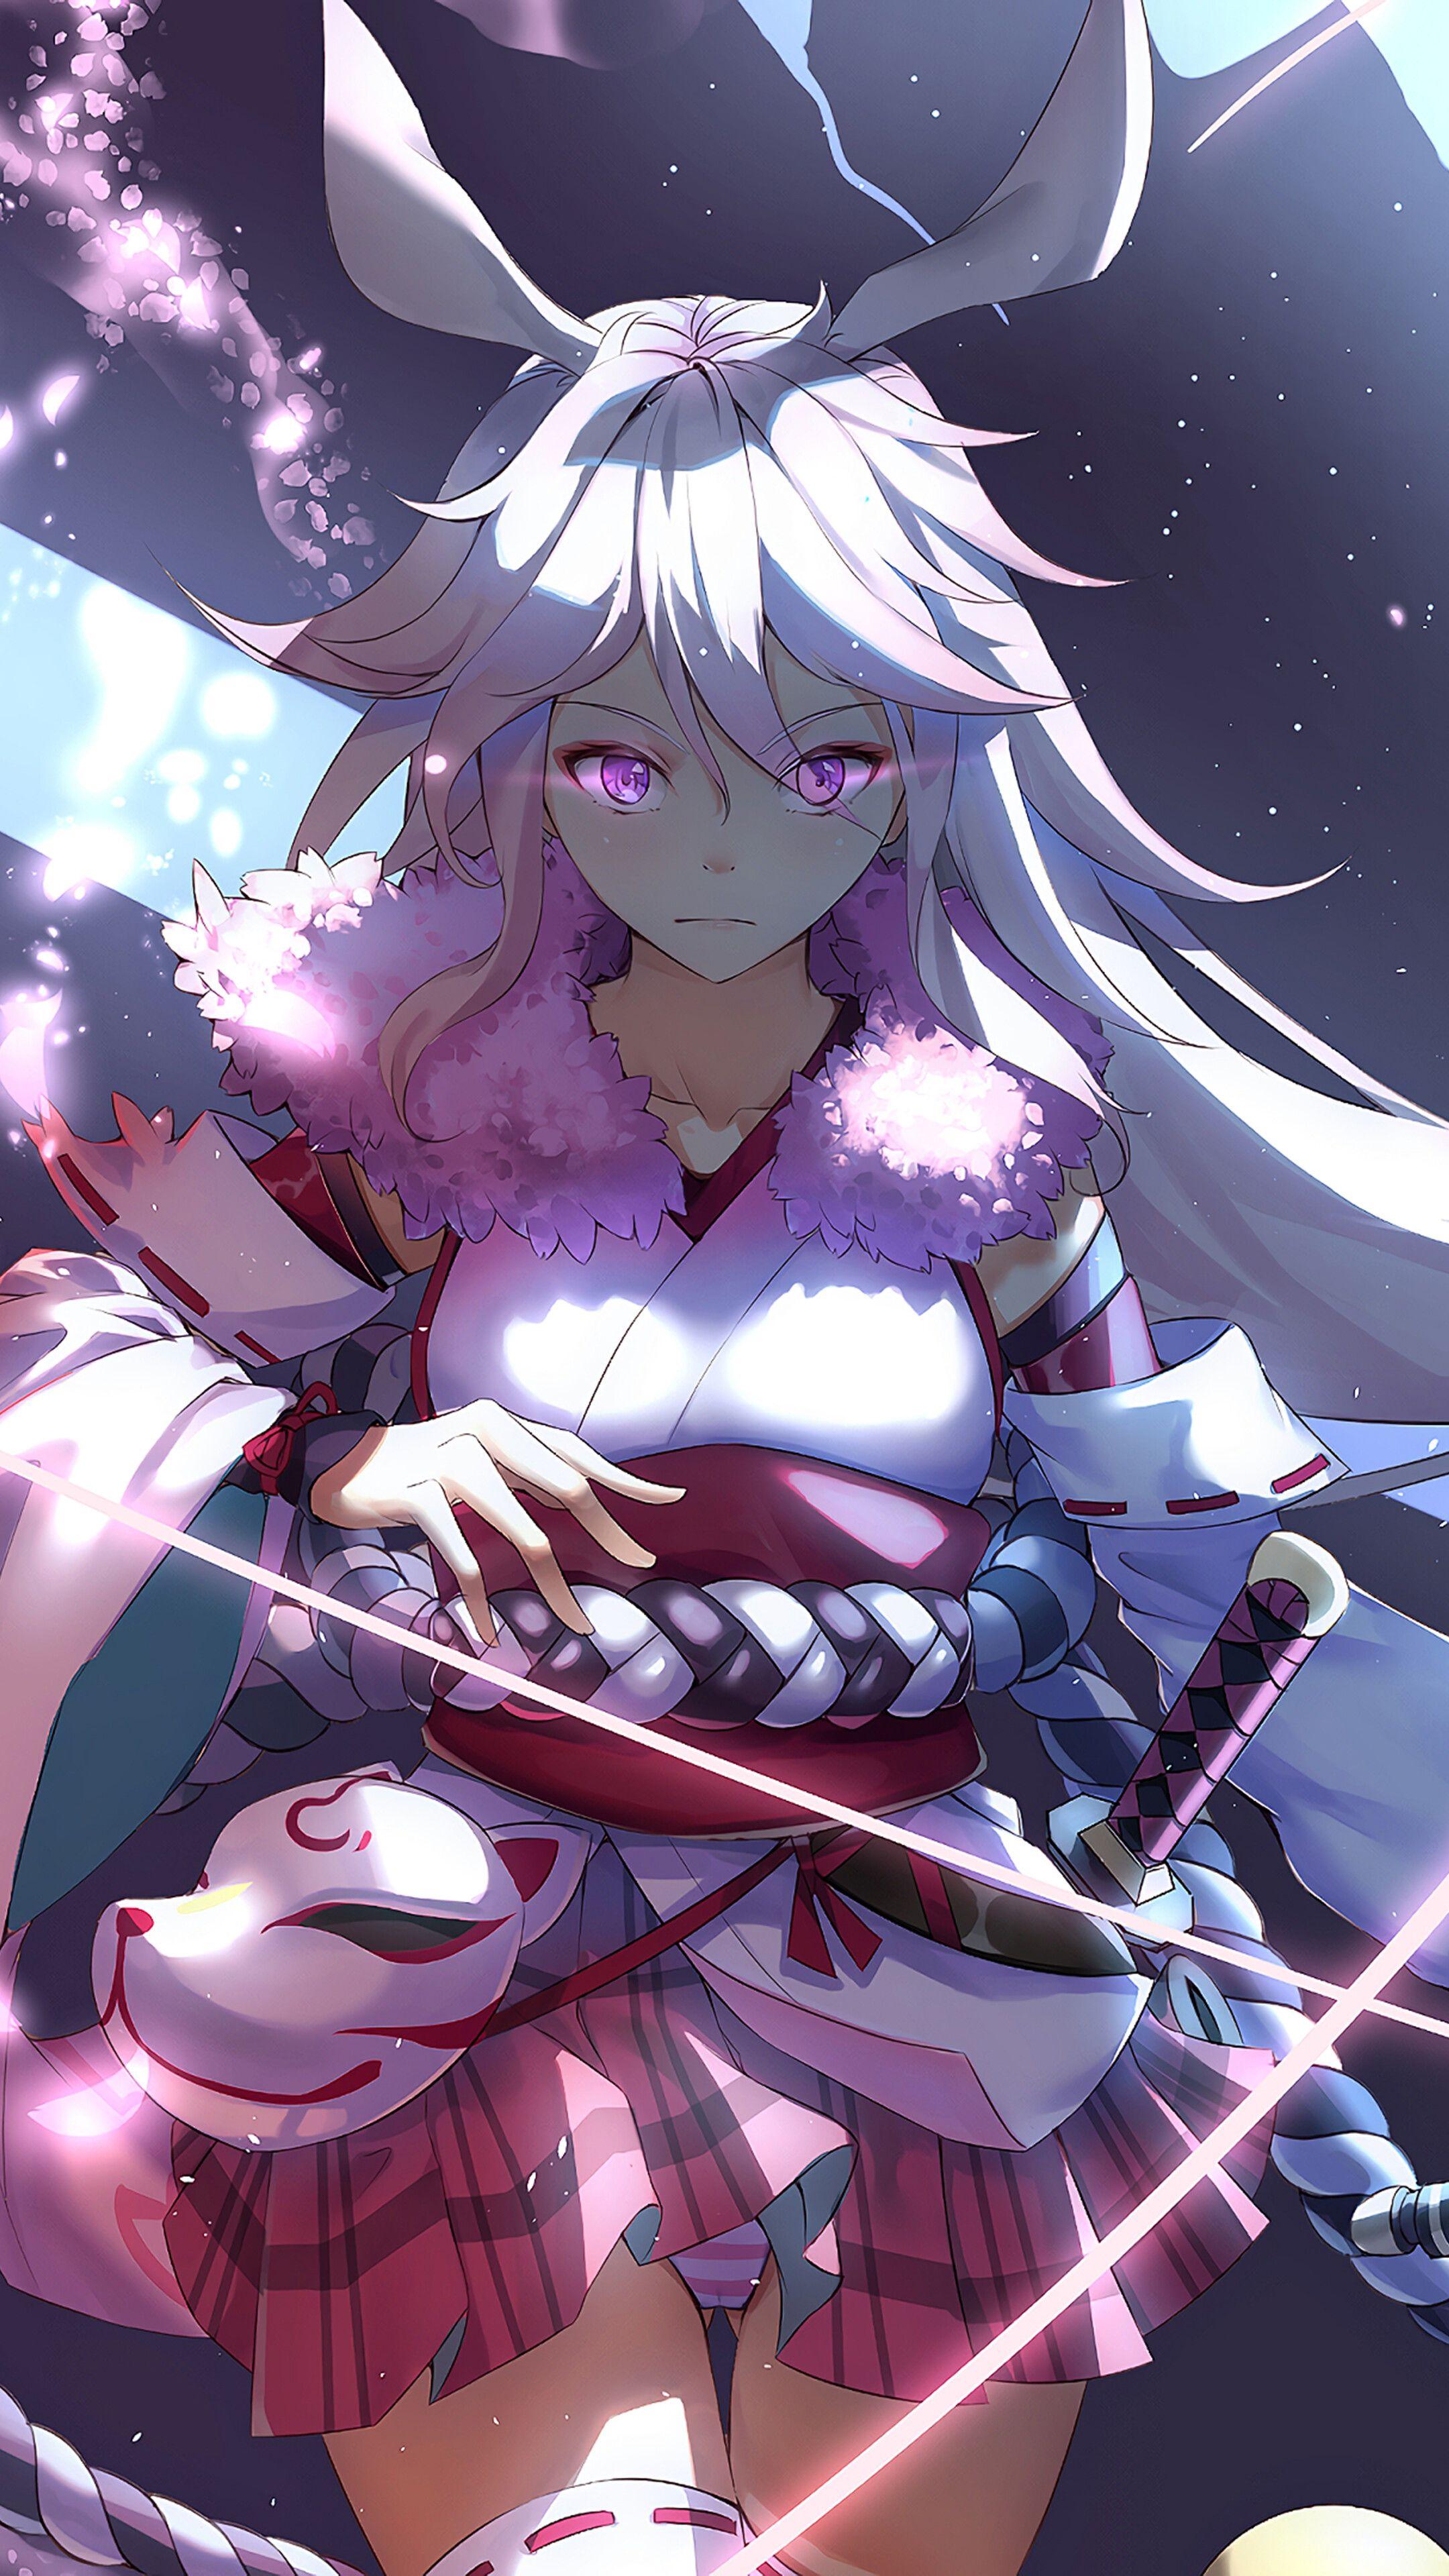 Anime girl cyborg katana and sword Wallpaper 8k HD ID:11290